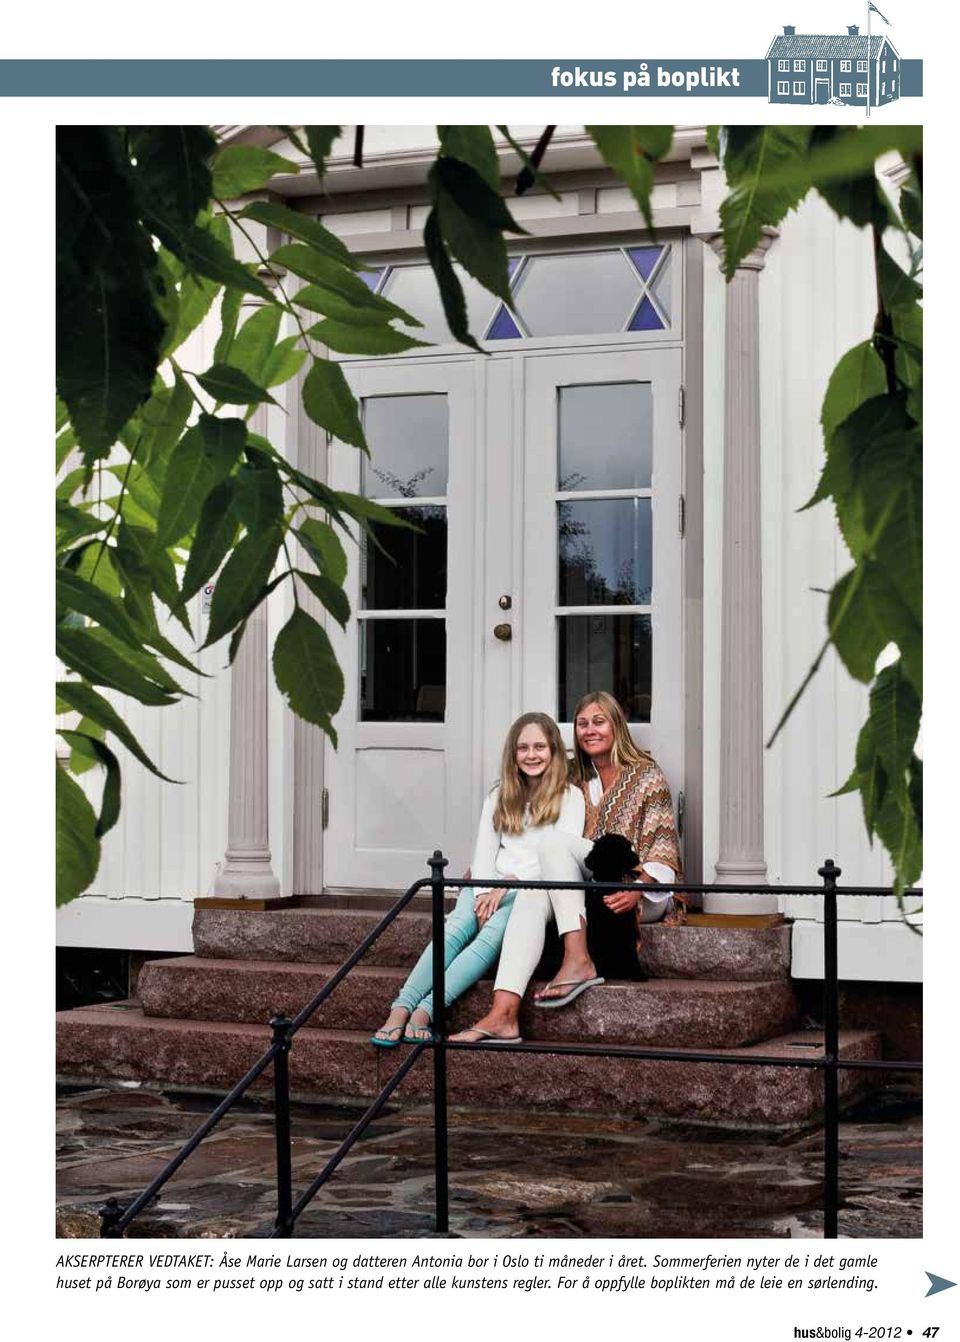 Sommerferien nyter de i det gamle huset på Borøya som er pusset opp og